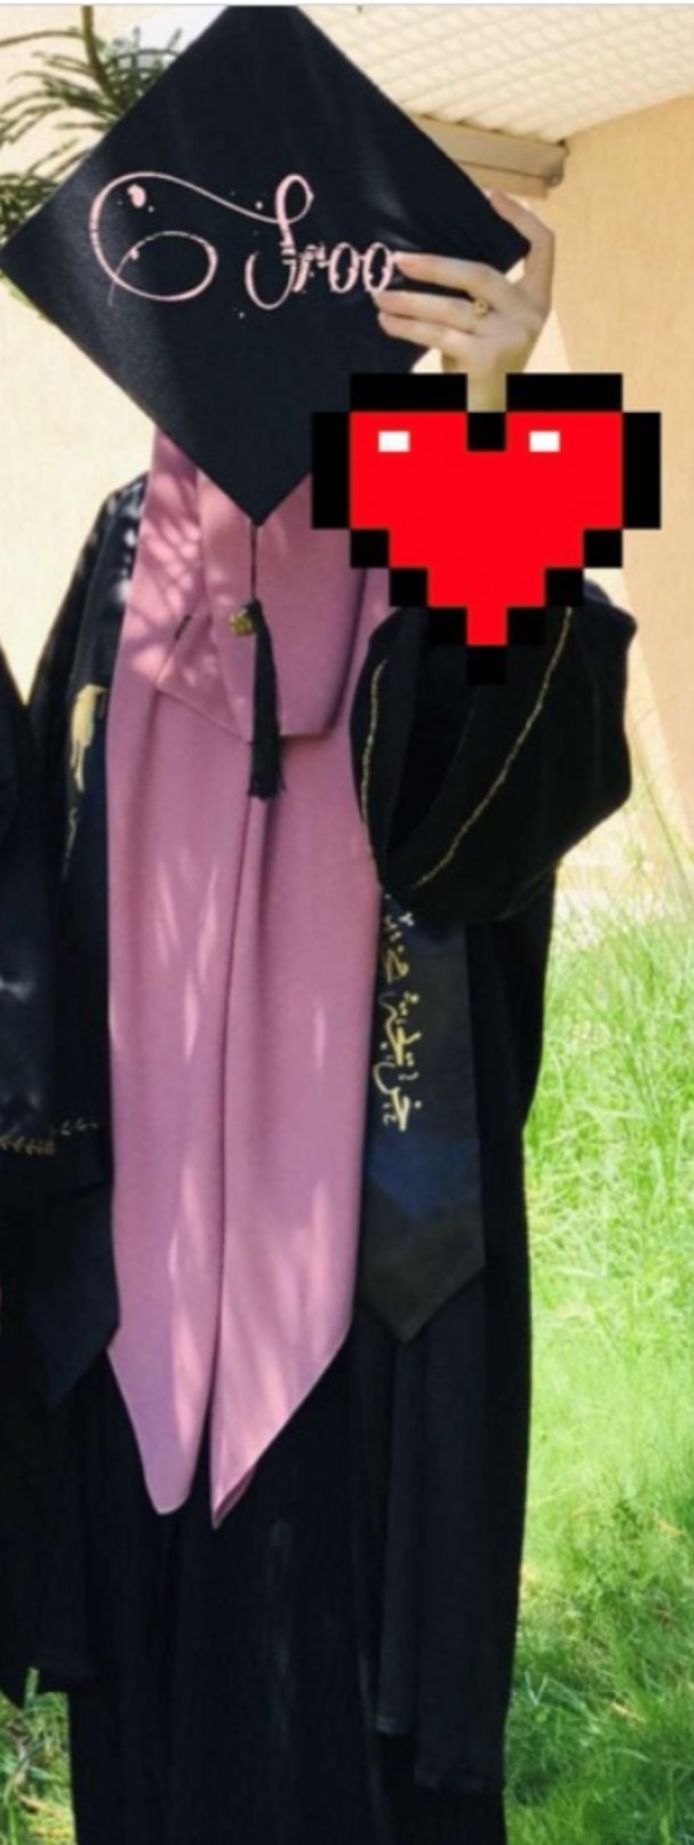 Dit moet Isra (21) zijn, vrij recent bij een diploma-uitreiking in Tripoli. Ze schermt haar gezicht af. Ook is bij haar hand iets afgeschermd; onbekend wat. De foto heeft enige tijd op Facebook gestaan, maar inmiddels verwijderd.